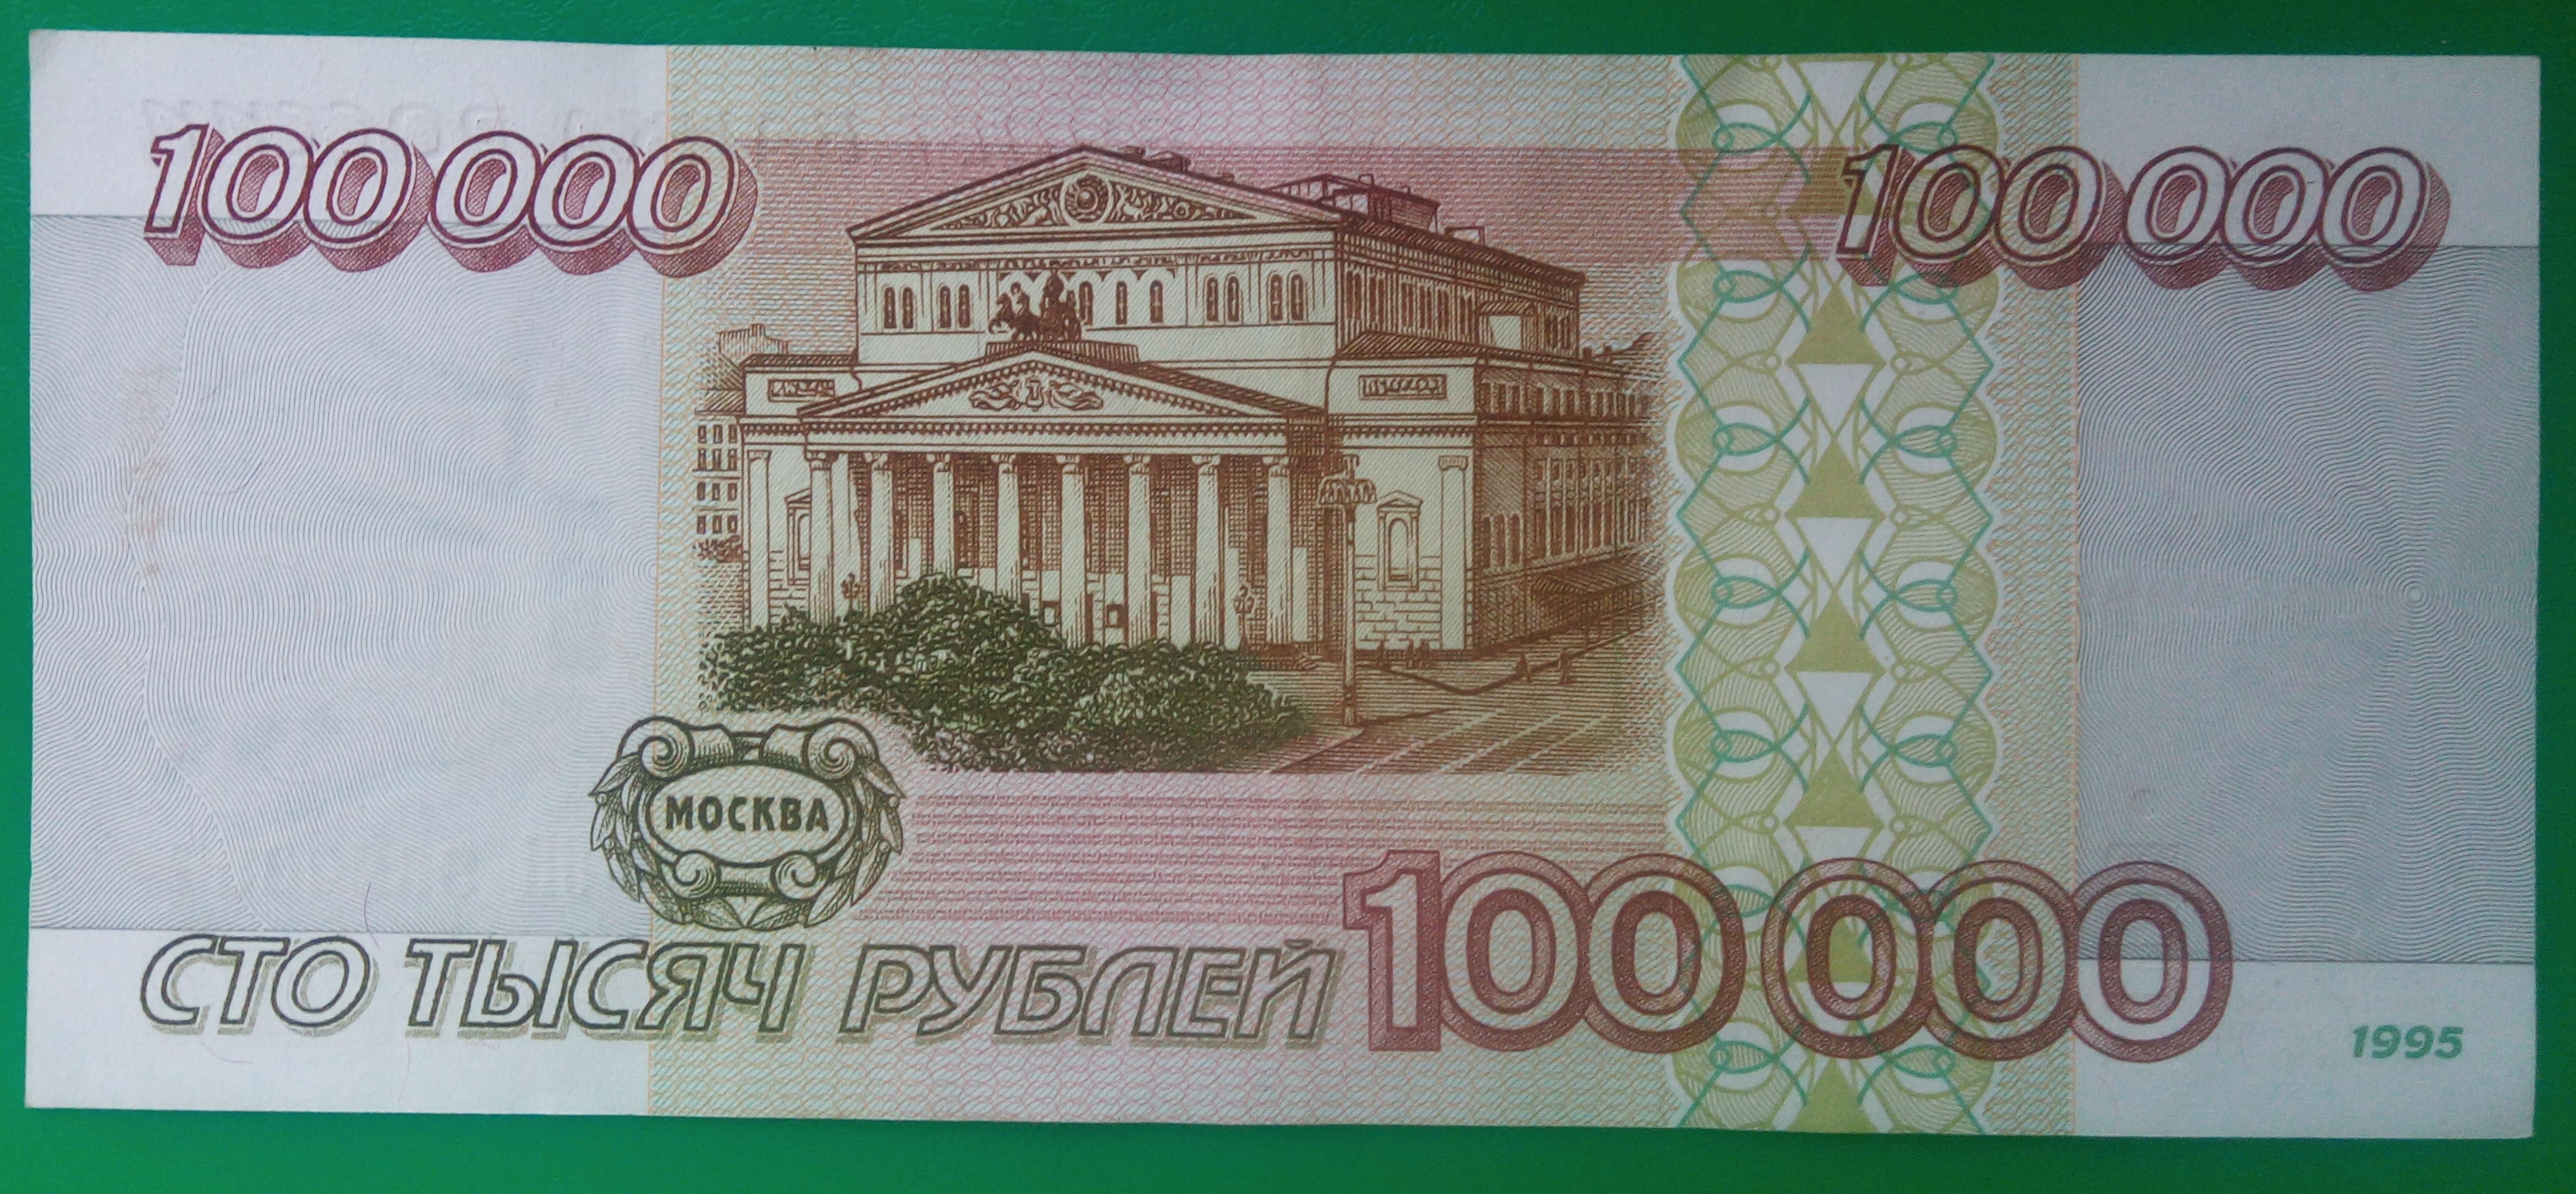 Сто пятьдесят сто шестьдесят. СТО рублей. Купюра 100 рублей. Купюры 1995 года. 100000 Рублей 1995 года.